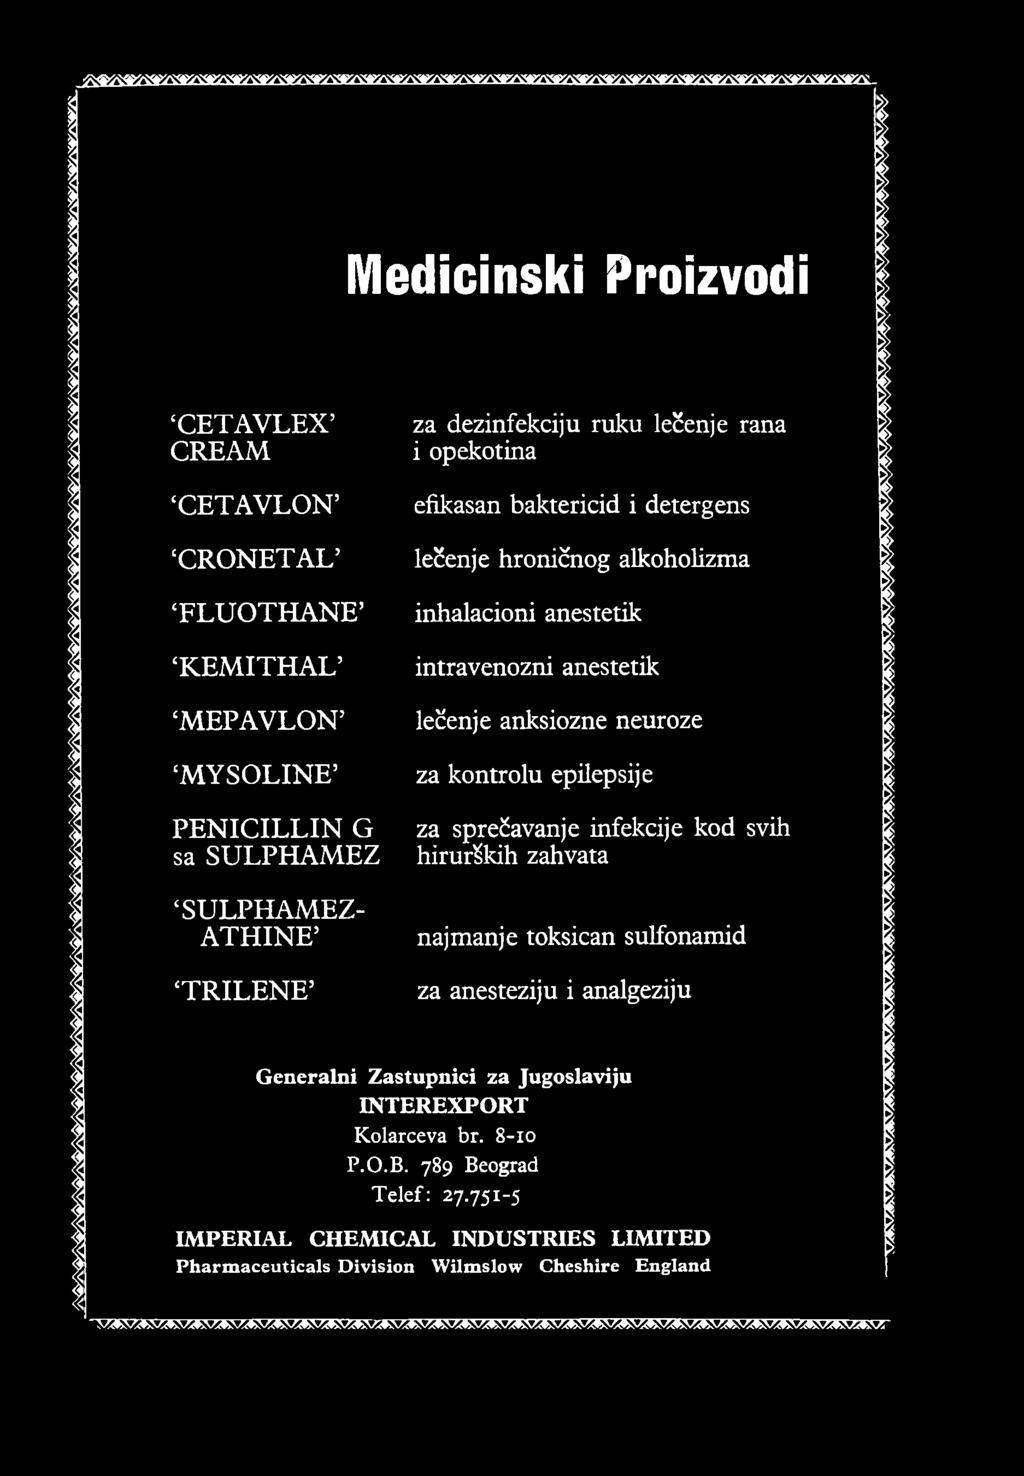 kontrolu epilepsije za sprečavanje infekcije kod svih hirurških zahvata najmanje toksičan sulfonamid za anesteziju i analgeziju Generalni Zastupnici za Jugoslaviju